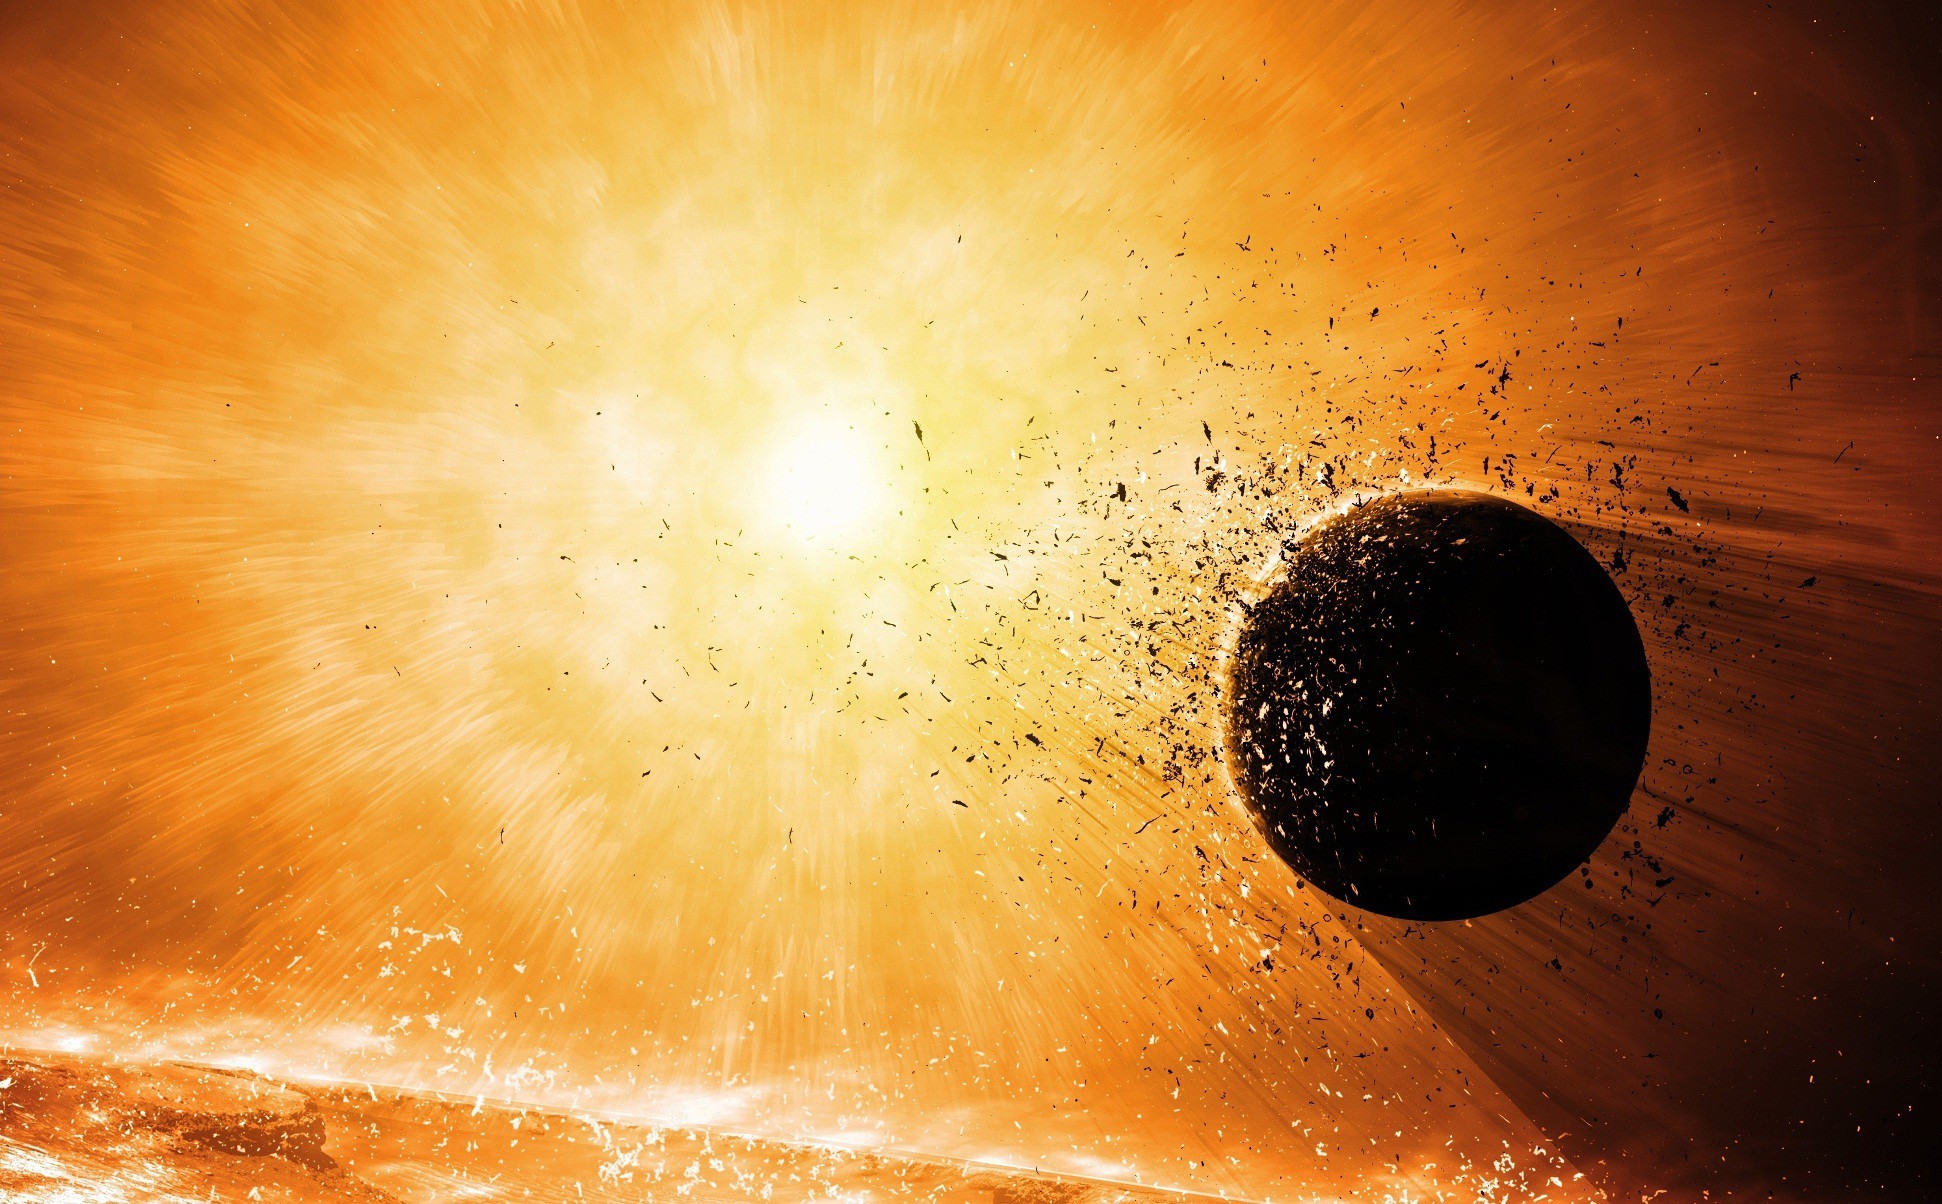 General 1942x1204 space destruction planet explosion apocalyptic space art digital art